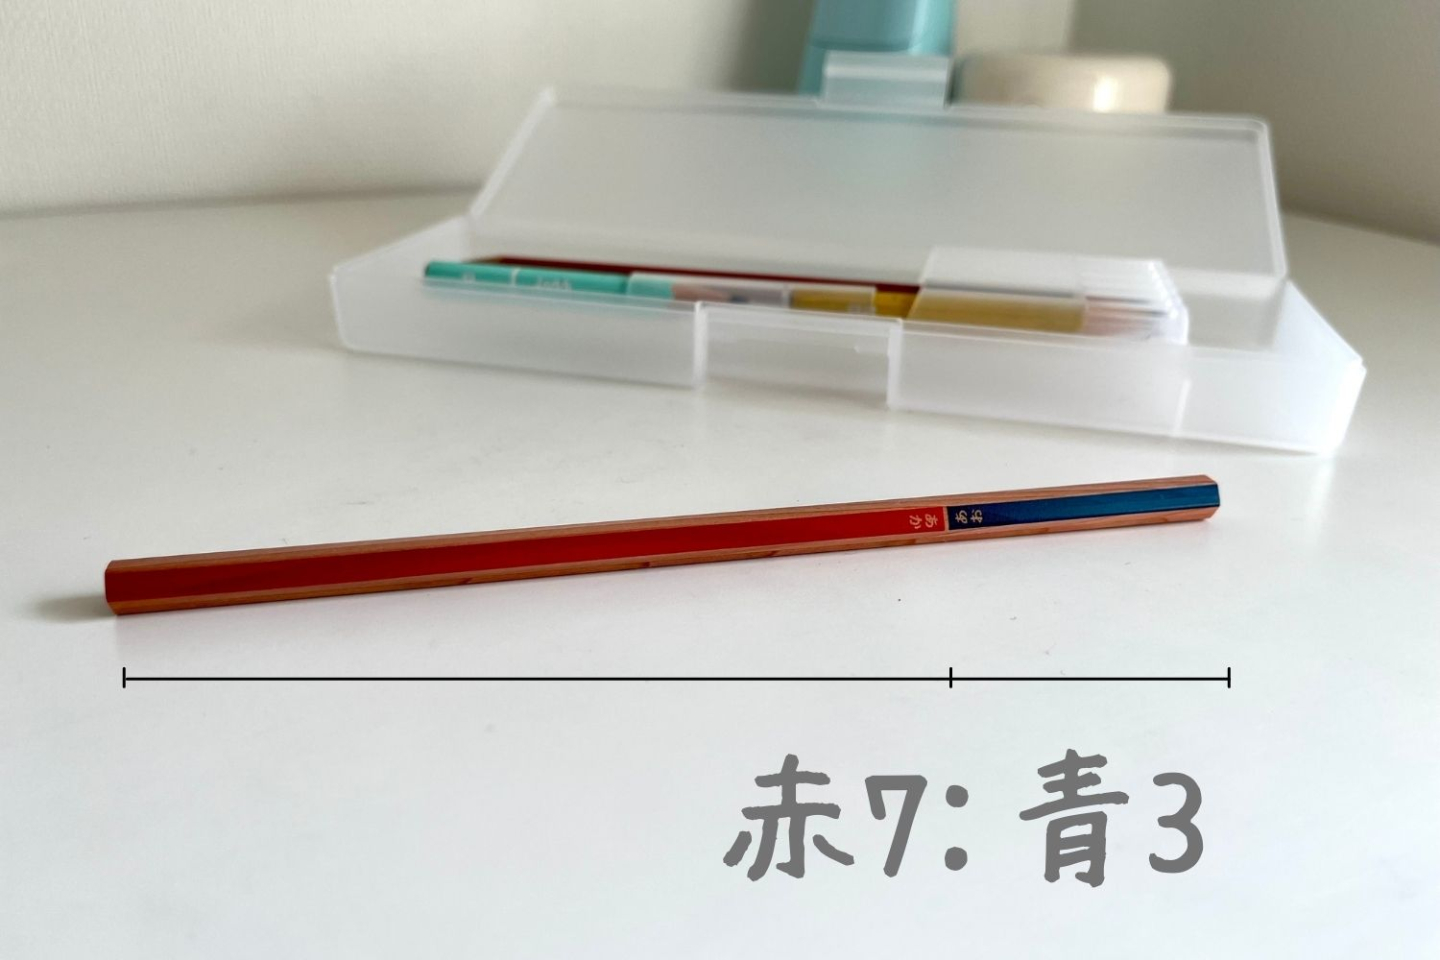 無印良品の赤青鉛筆は「赤多めの比率」がさすが！「はじめての文房具」シリーズに注目【本日のお気に入り】